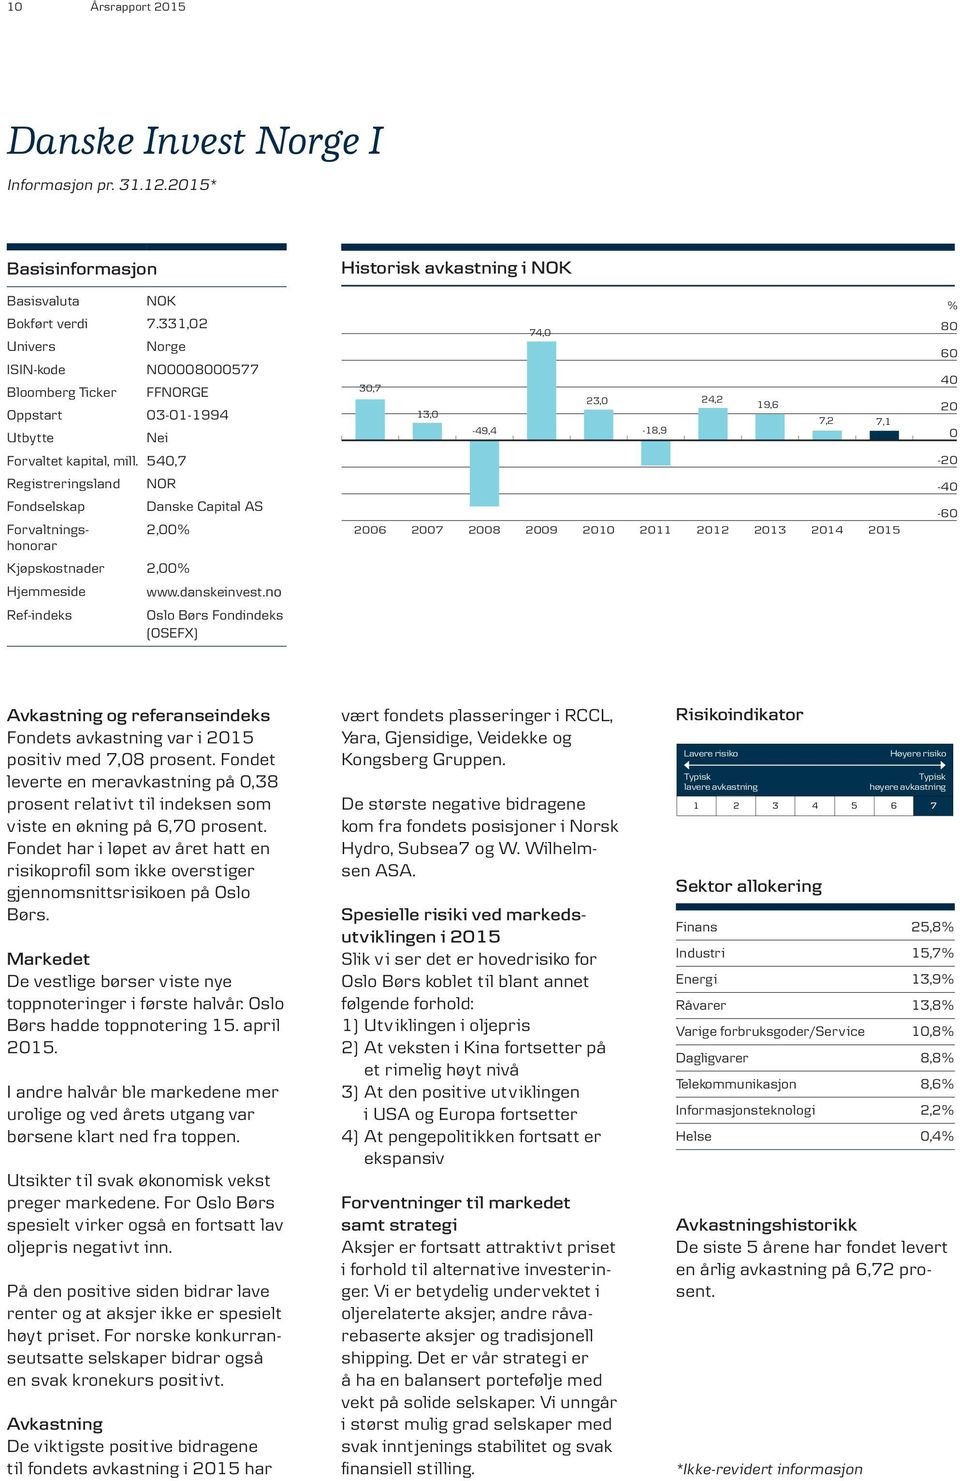 540,7 Registreringsland Fondselskap Forvaltnings - honorar NOR Danske Capital AS 2,00% Kjøpskostnader 2,00% Hjemmeside Ref-indeks www.danskeinvest.